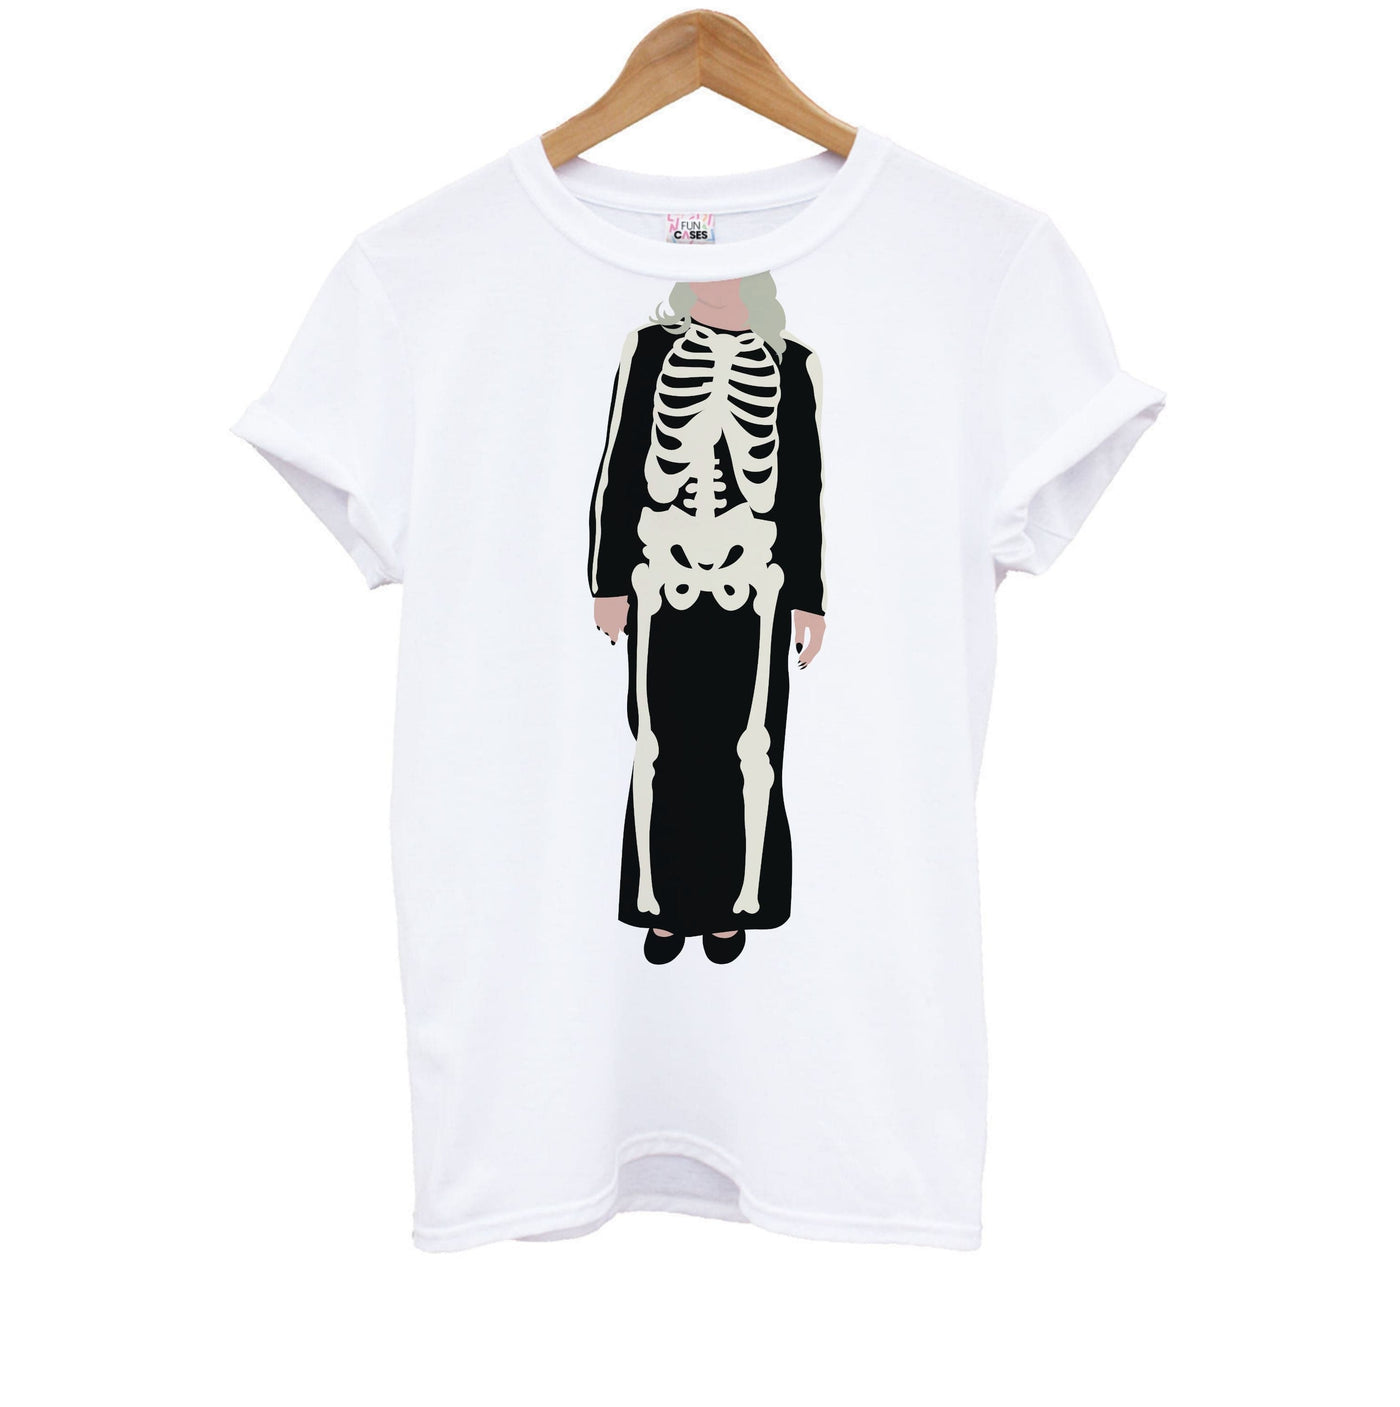 Skeleton - Phoebe Bridgers Kids T-Shirt